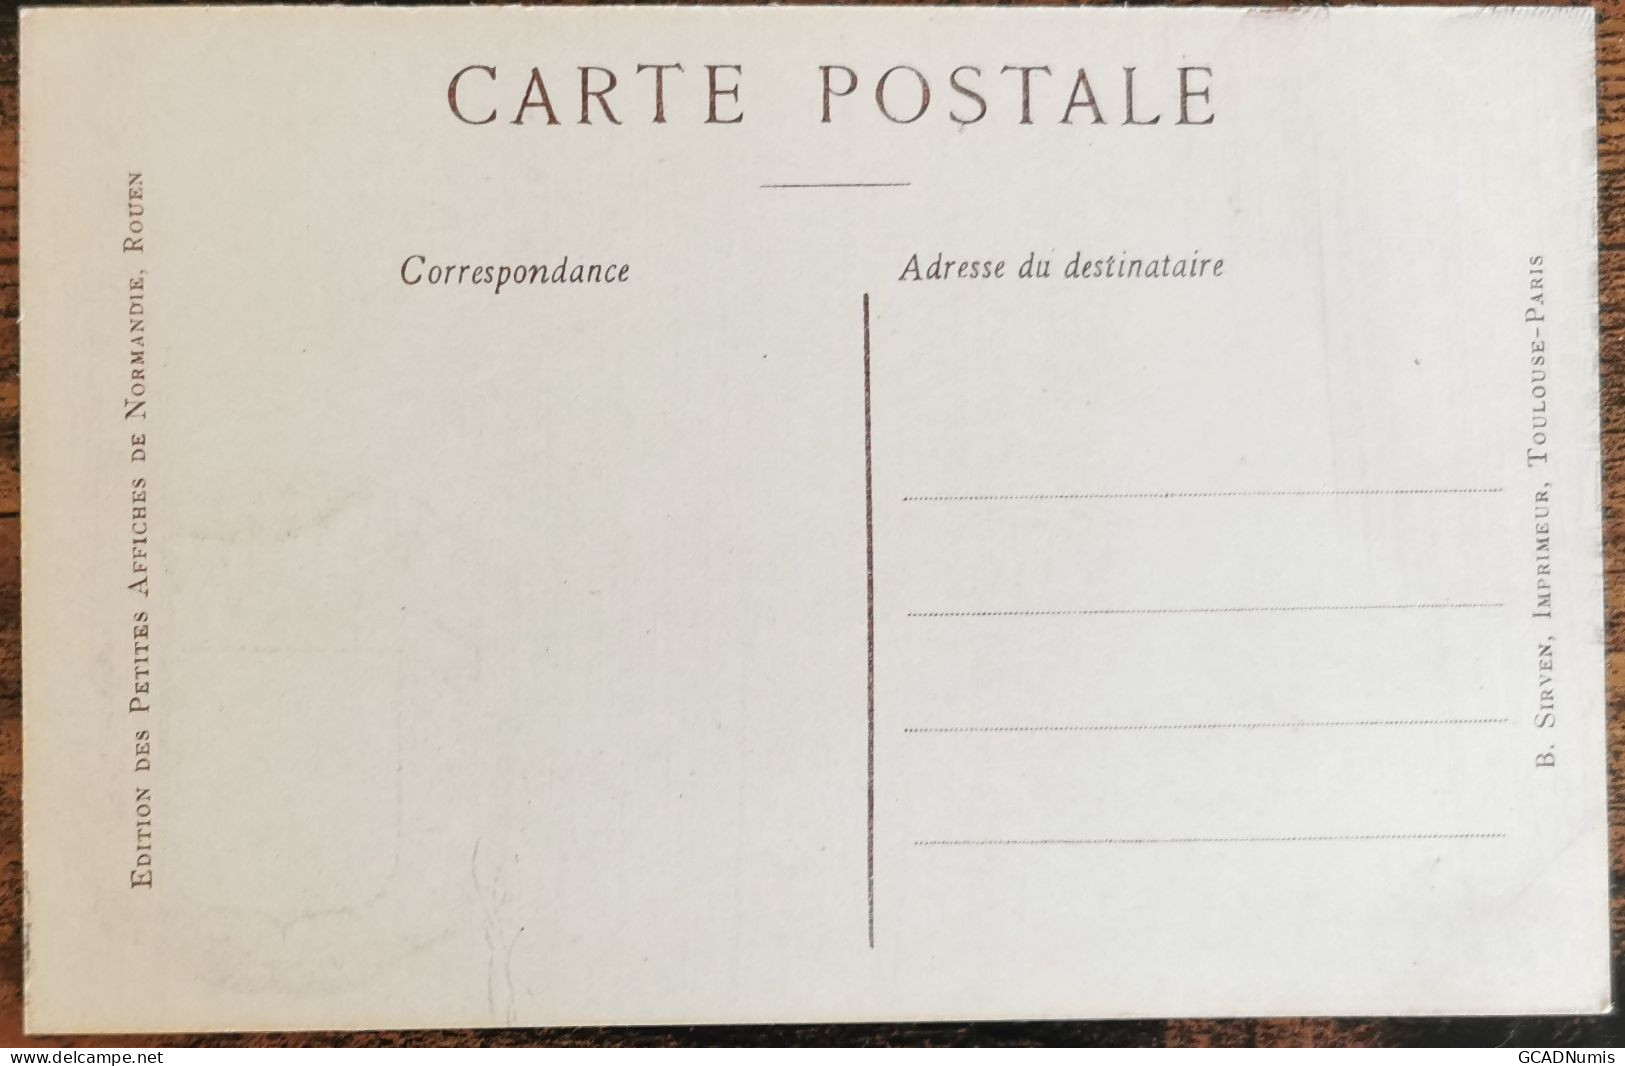 CARTE POSTALE Billet 1 Franc Chambre De Commerce De GRENOBLE - Isère - Grenoble